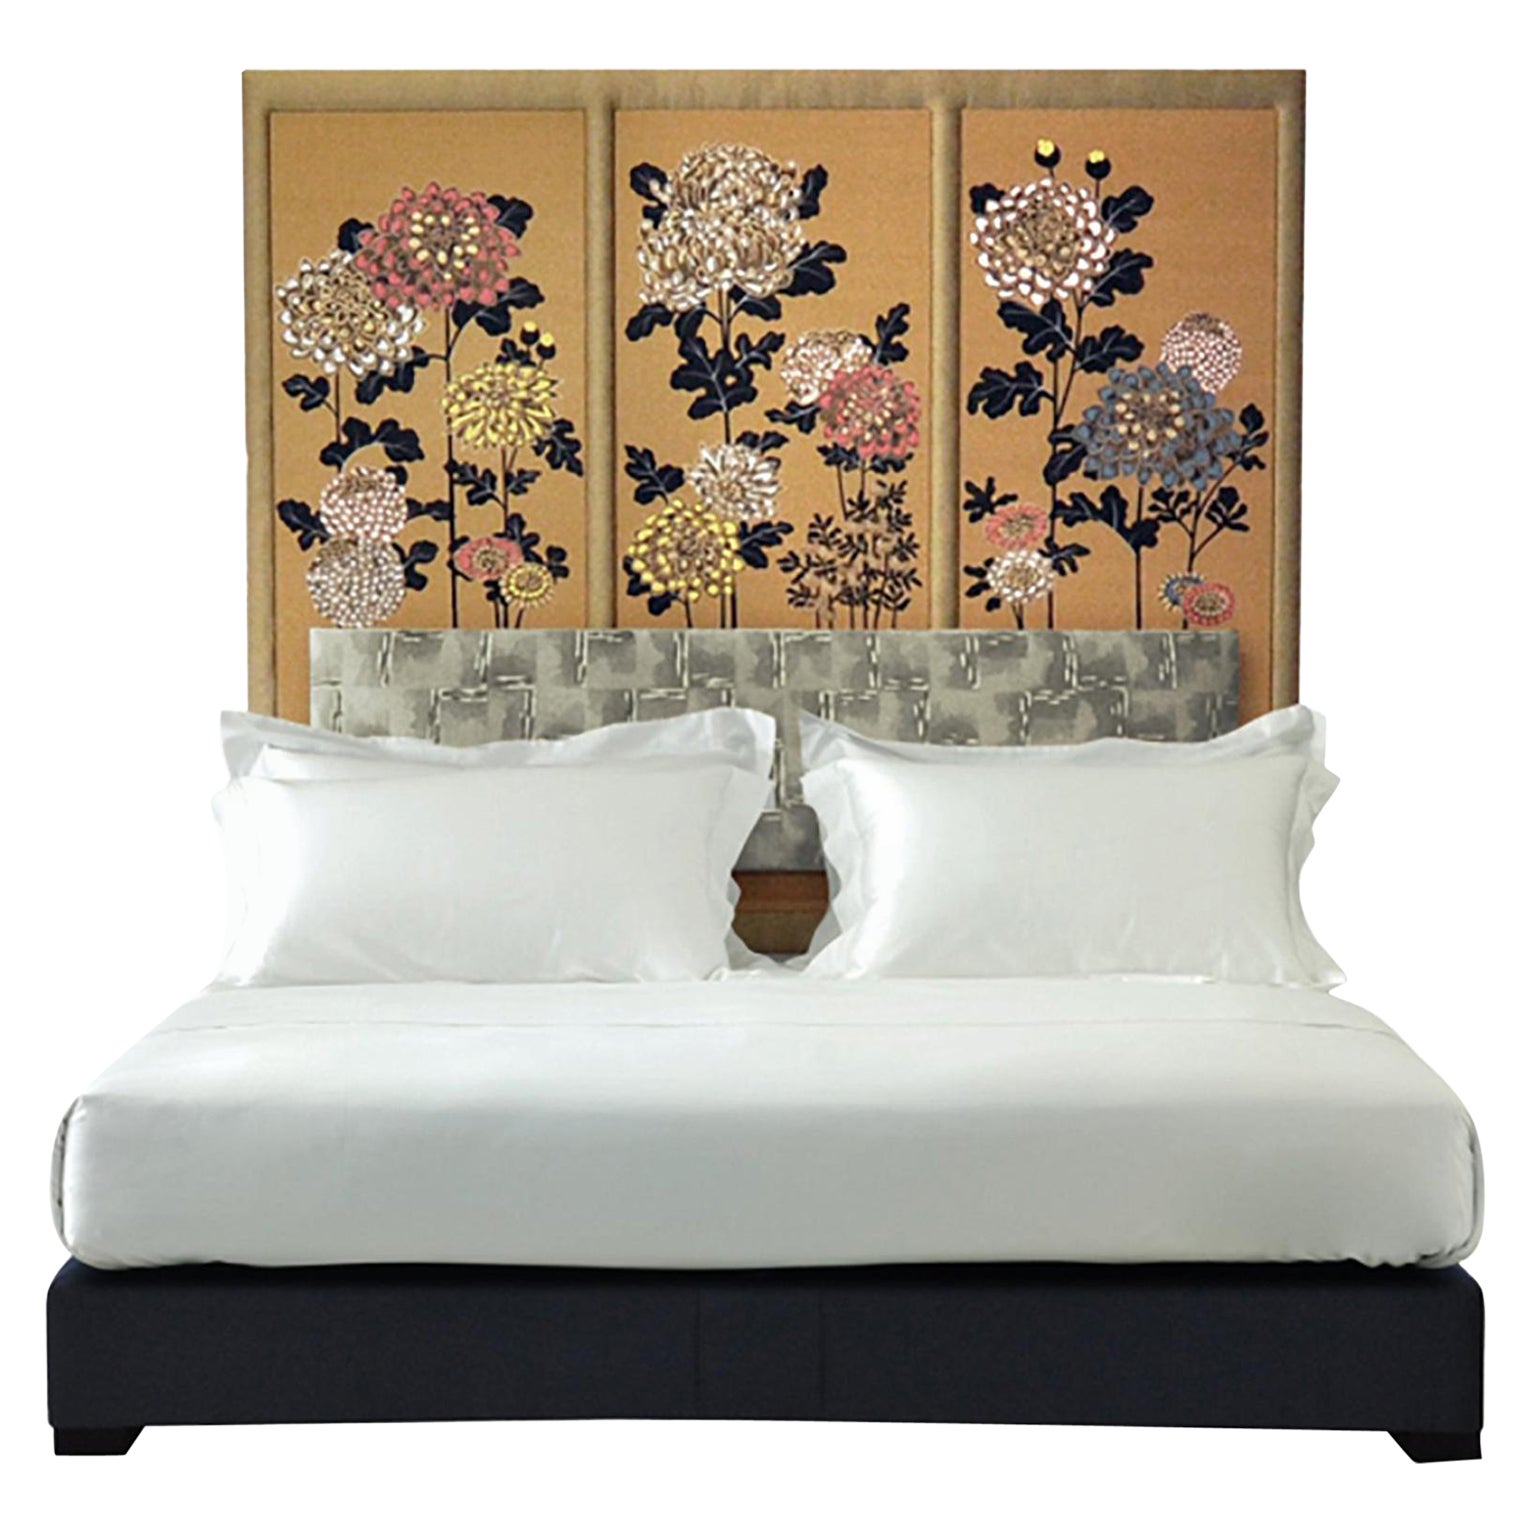 Bespoke Savoir Kiku Headboard & Nº3 Bed Set, Eastern King Size, by Fromental